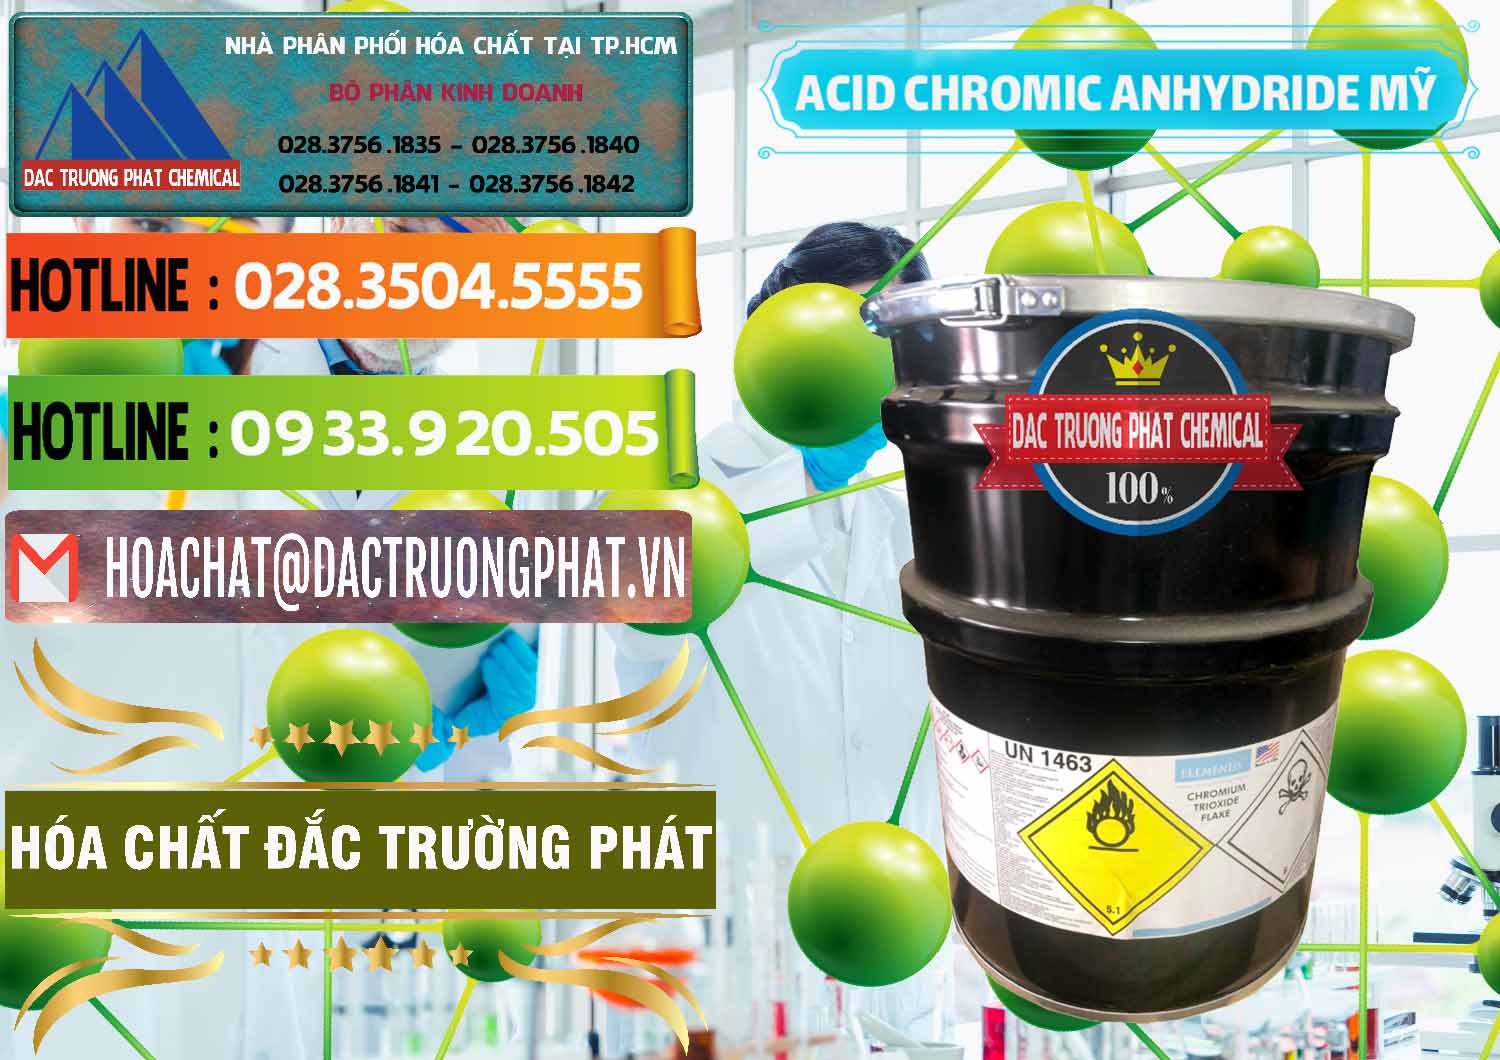 Đơn vị chuyên nhập khẩu _ bán Acid Chromic Anhydride - Cromic CRO3 USA Mỹ - 0364 - Cty phân phối _ bán hóa chất tại TP.HCM - cungcaphoachat.com.vn